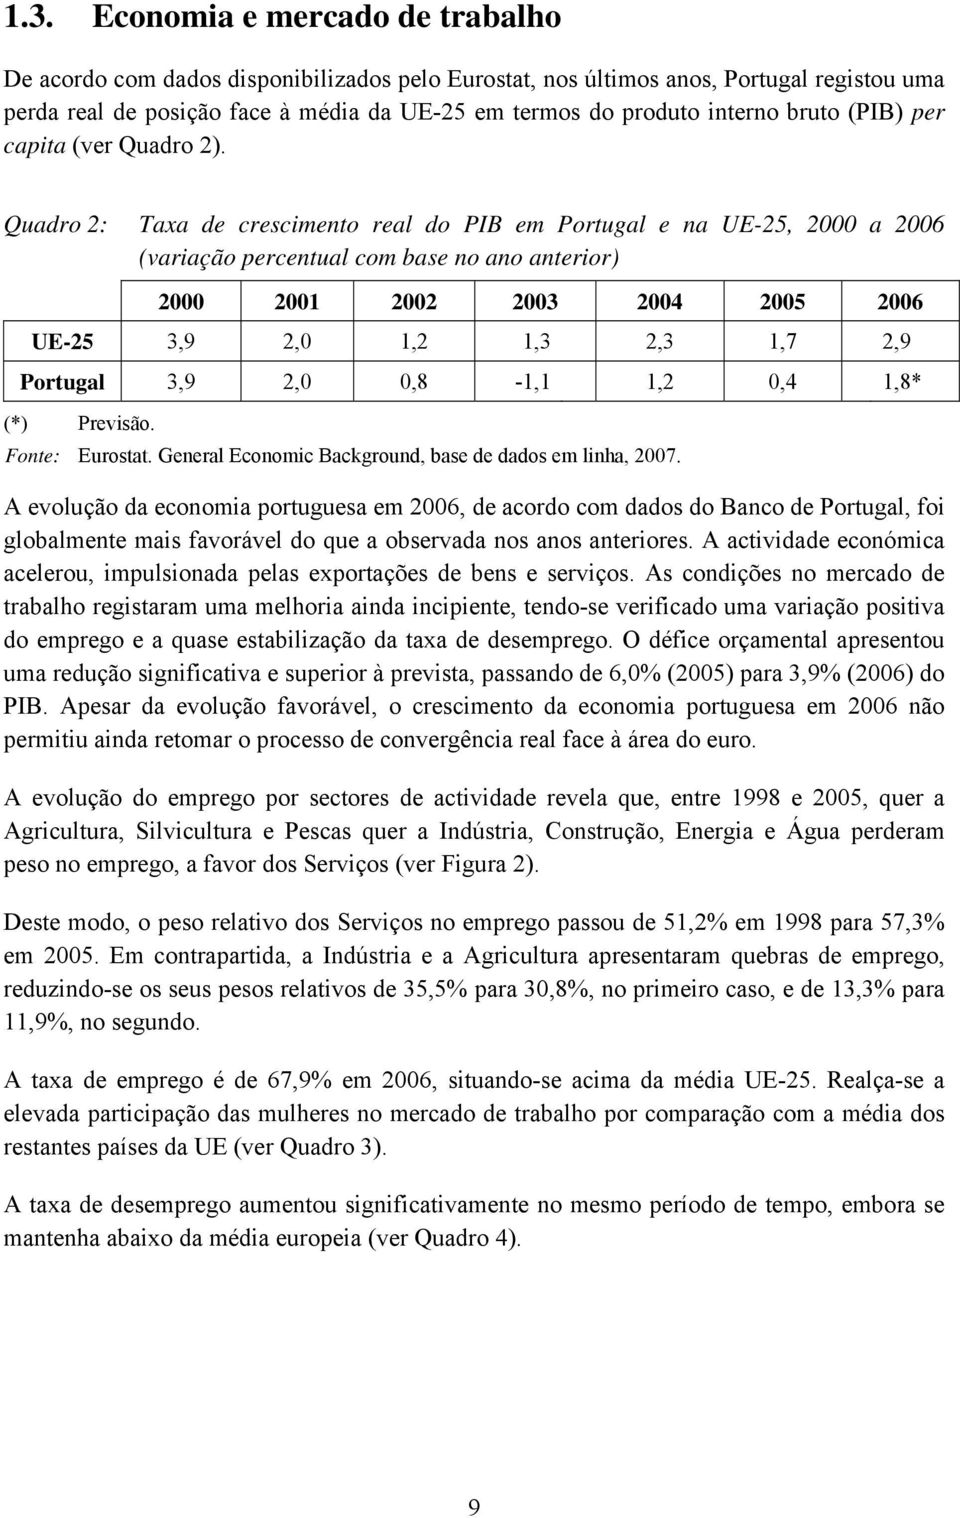 Quadro 2: Taxa de crescimento real do PIB em Portugal e na UE-25, 2000 a 2006 (variação percentual com base no ano anterior) 2000 2001 2002 2003 2004 2005 2006 UE-25 3,9 2,0 1,2 1,3 2,3 1,7 2,9